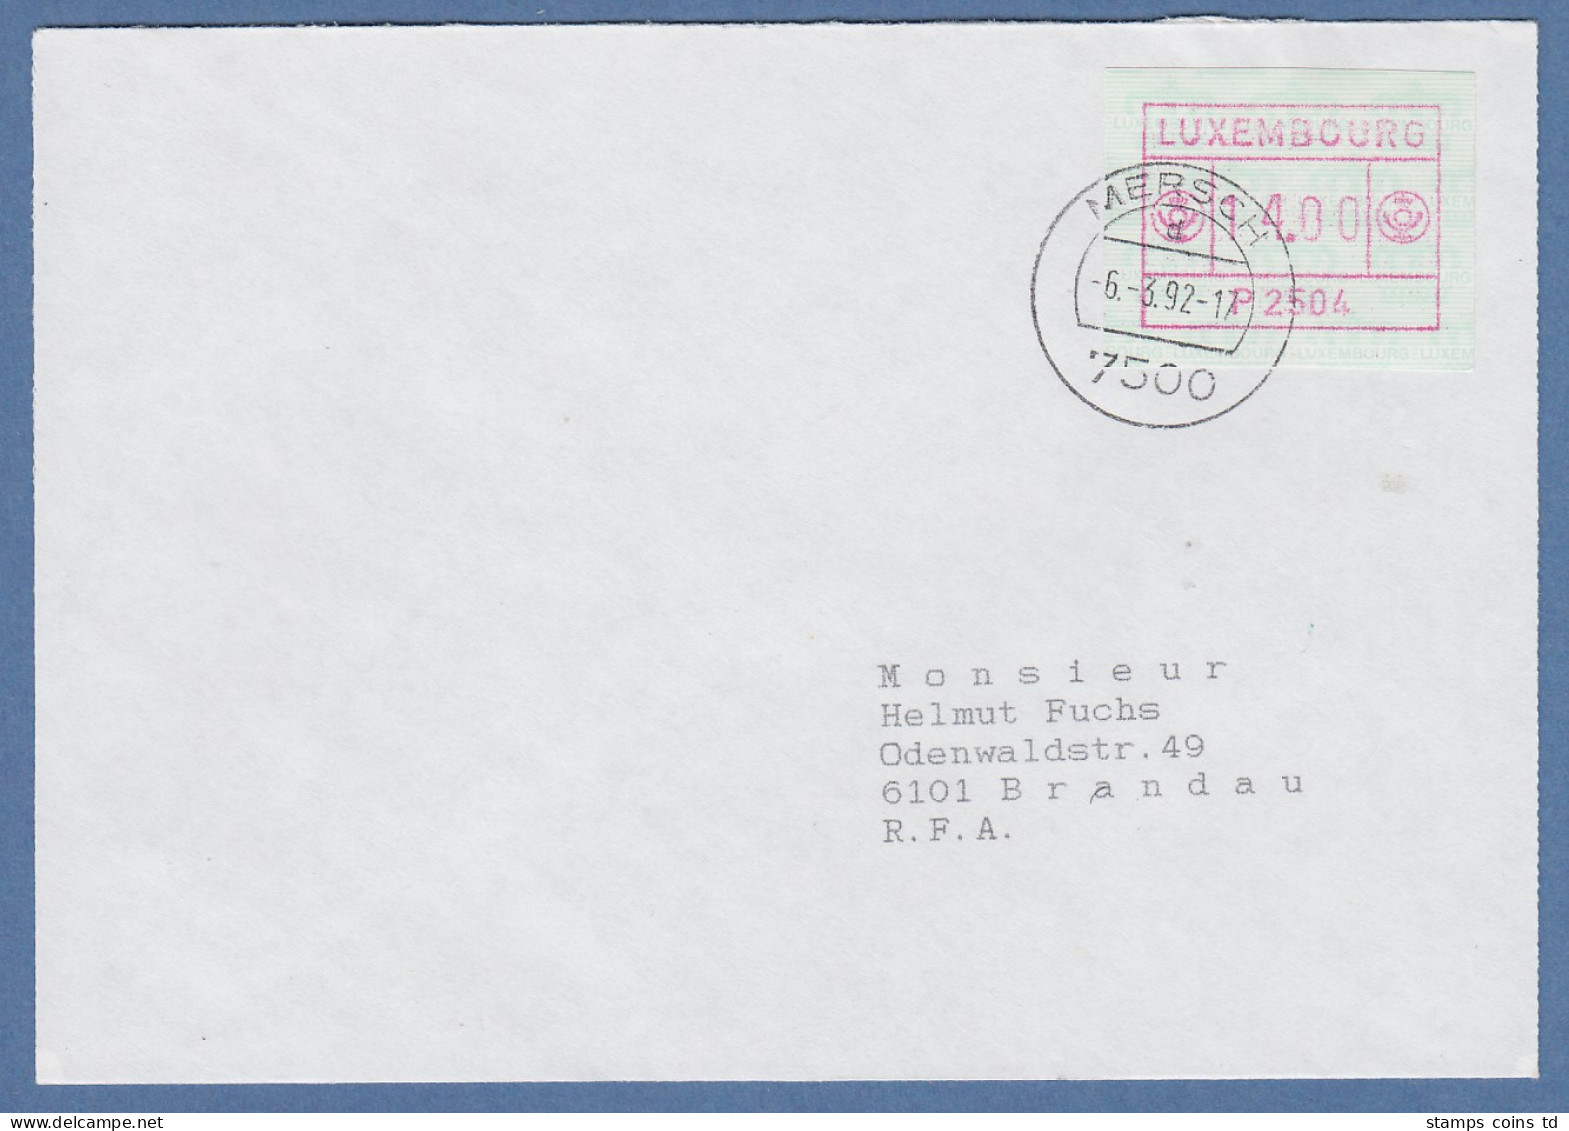 Luxemburg ATM P2504 Wert 14.00 Auf Brief Nach Brandau, O MERSCH 6.3.92 - Postage Labels